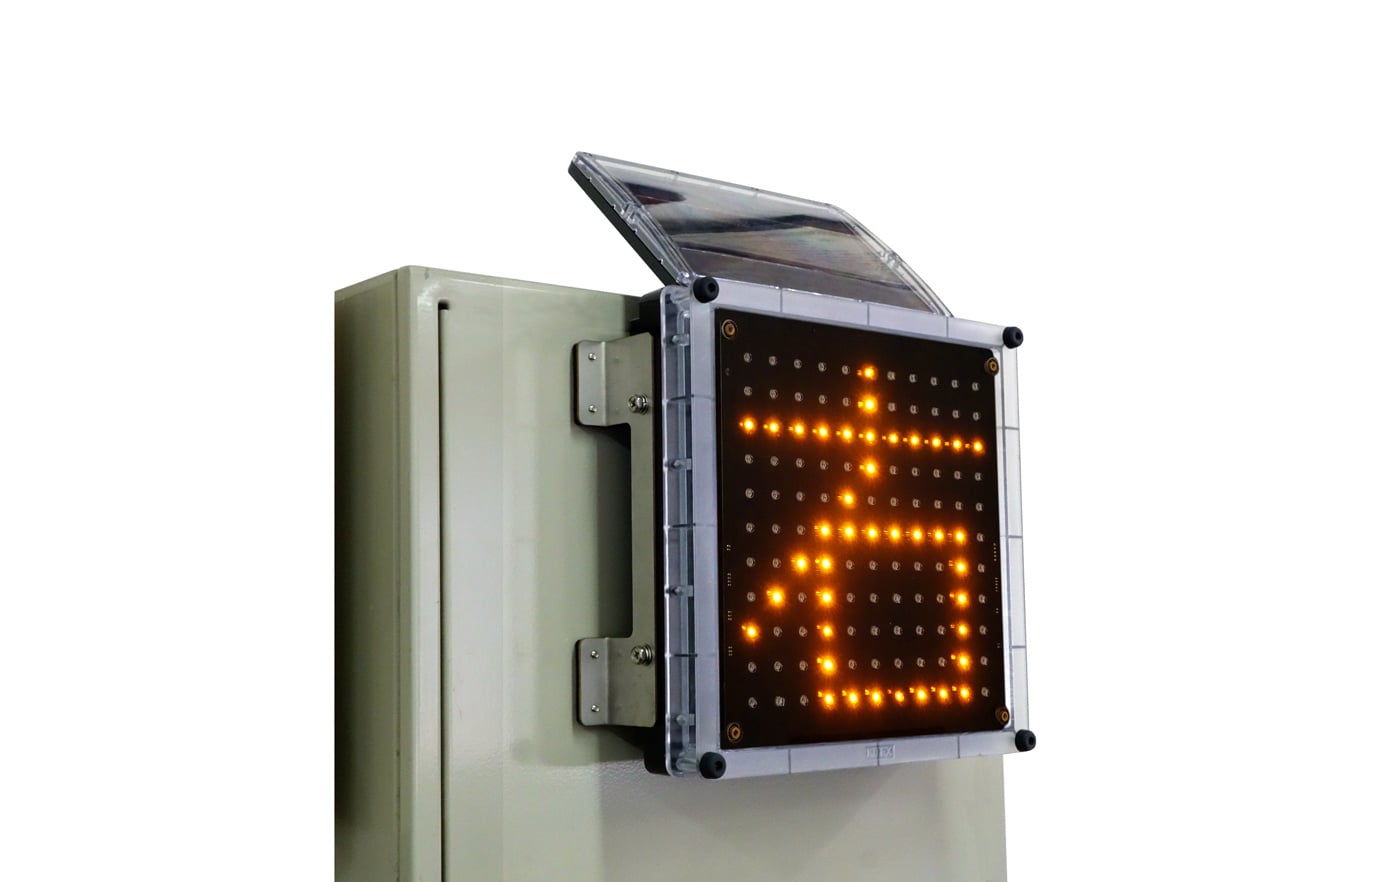 特価品コーナー☆ SINGLE SIGN ソーラー式LED1文字表示器 シングルサイン 台 KOD-001B キタムラ産業 